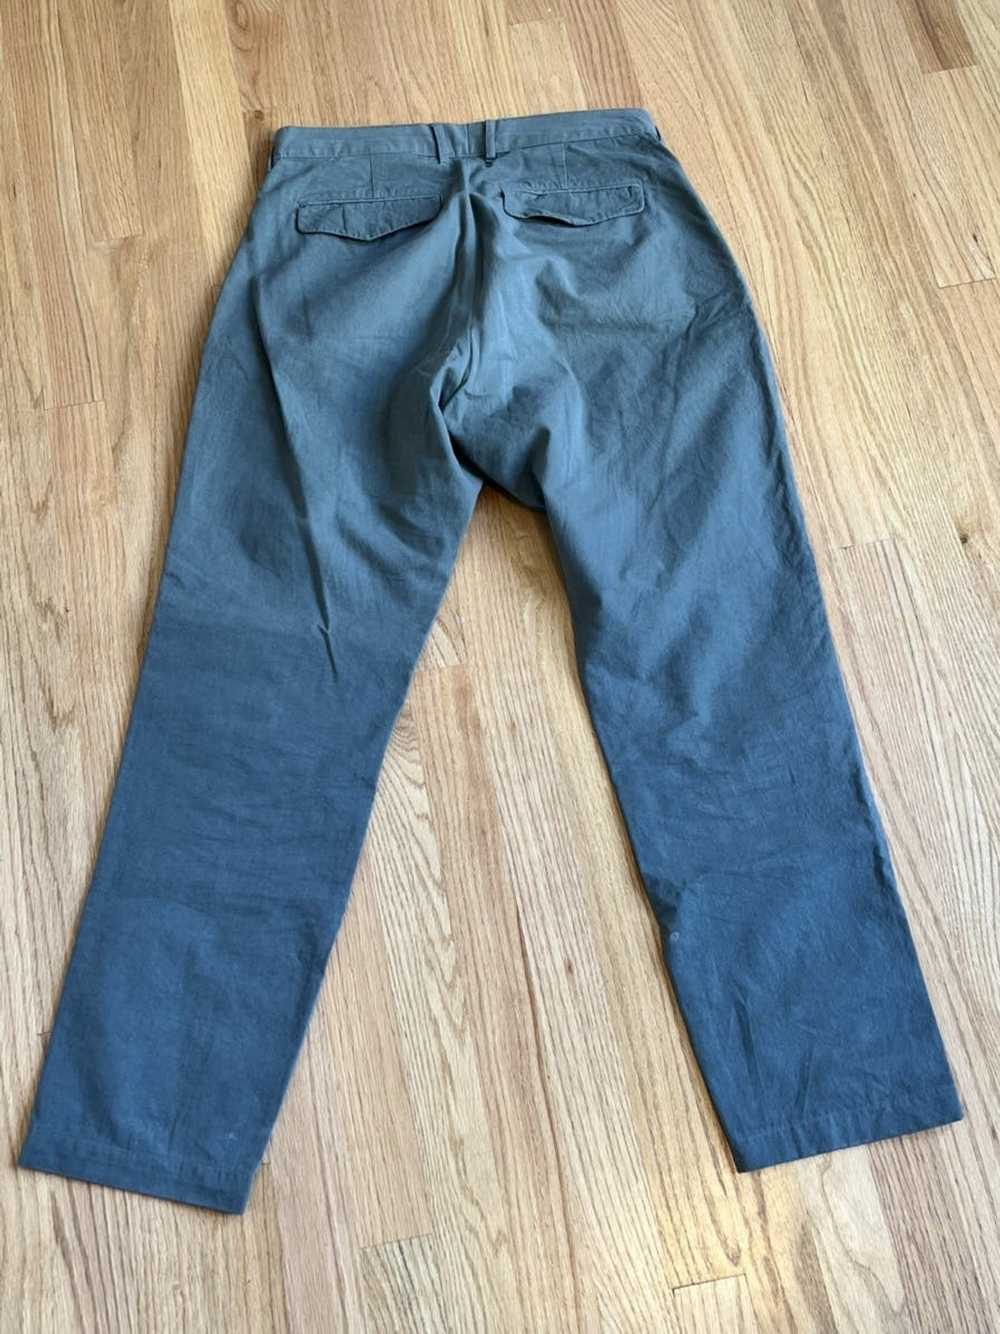 Entireworld Entireworld Pleated Trousers Type B V… - image 3